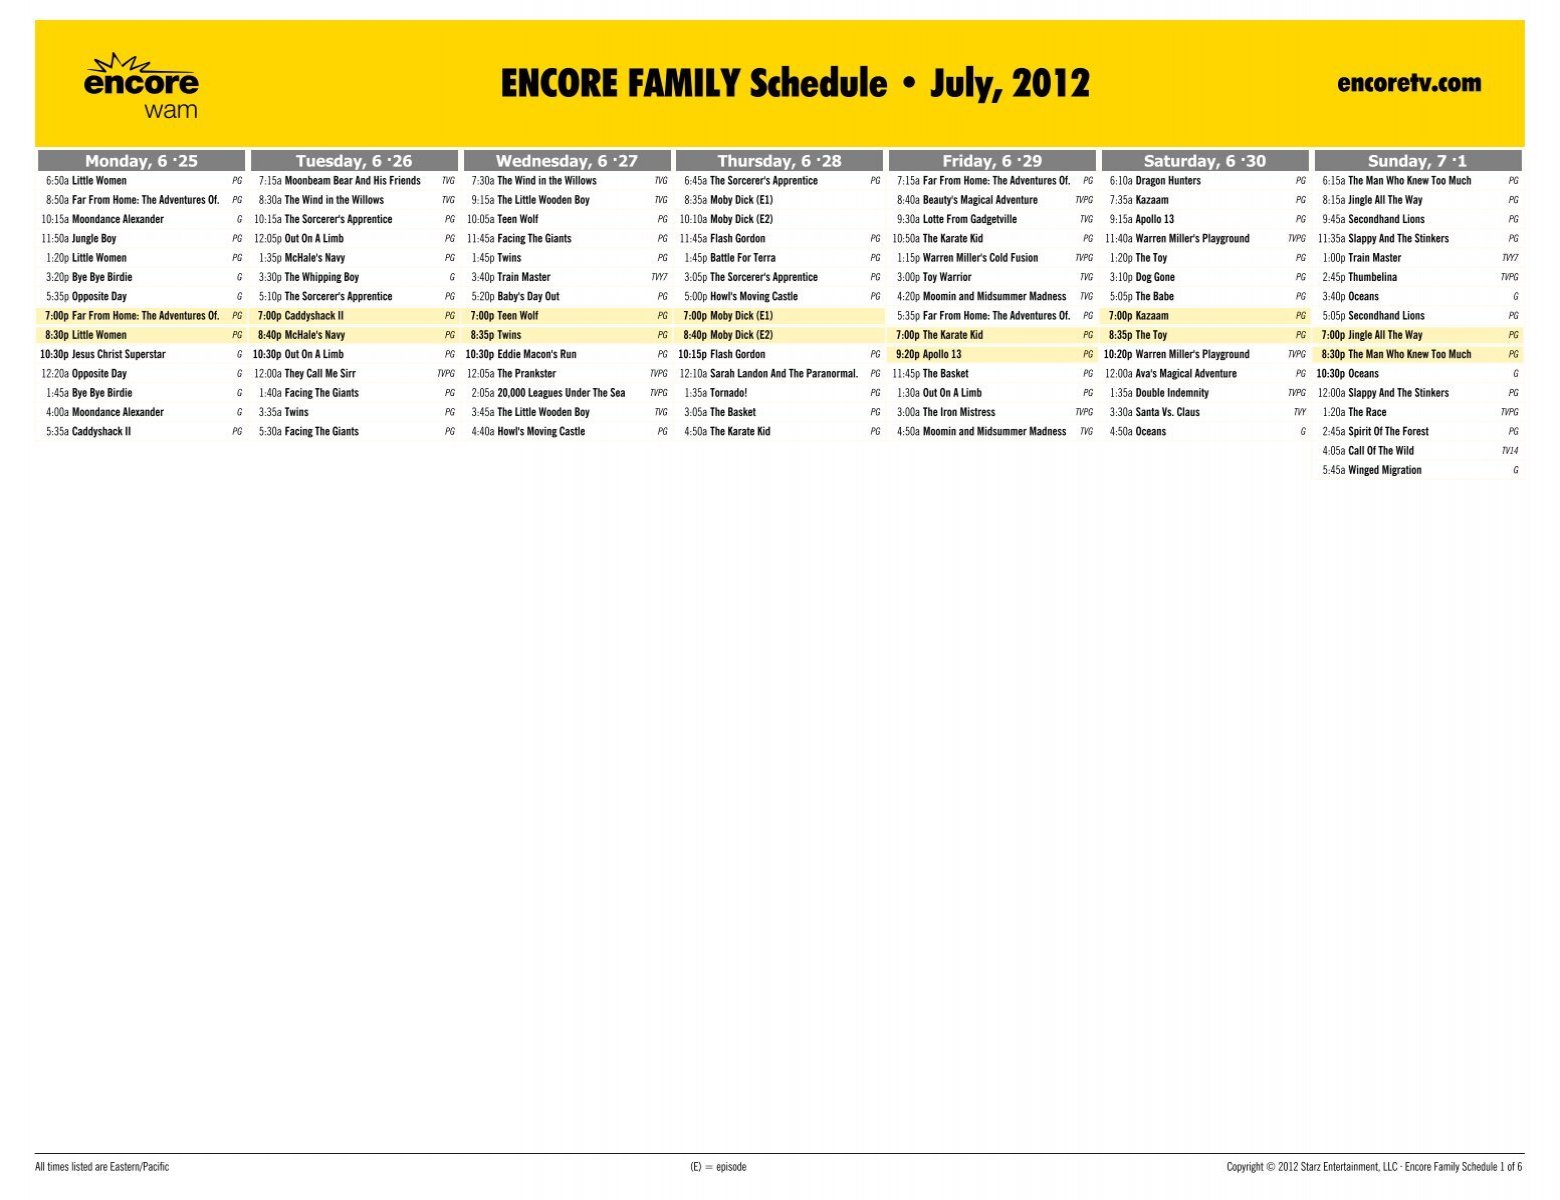 ENCORE FAMILY Schedule - July, 2012 - Starz